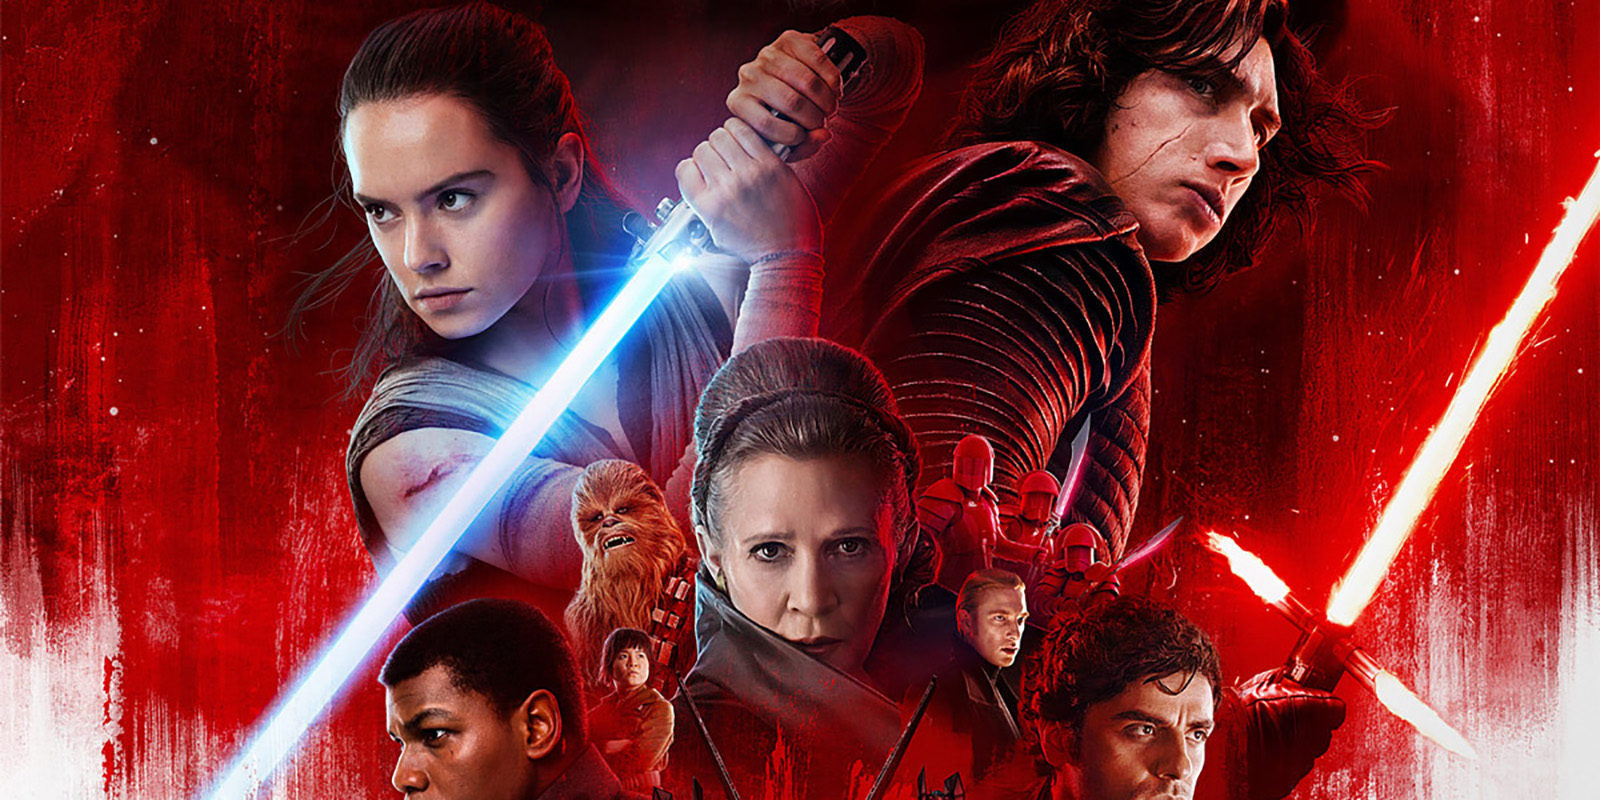 Tráiler de 'Star Wars: Los últimos Jedi', análisis plano a plano